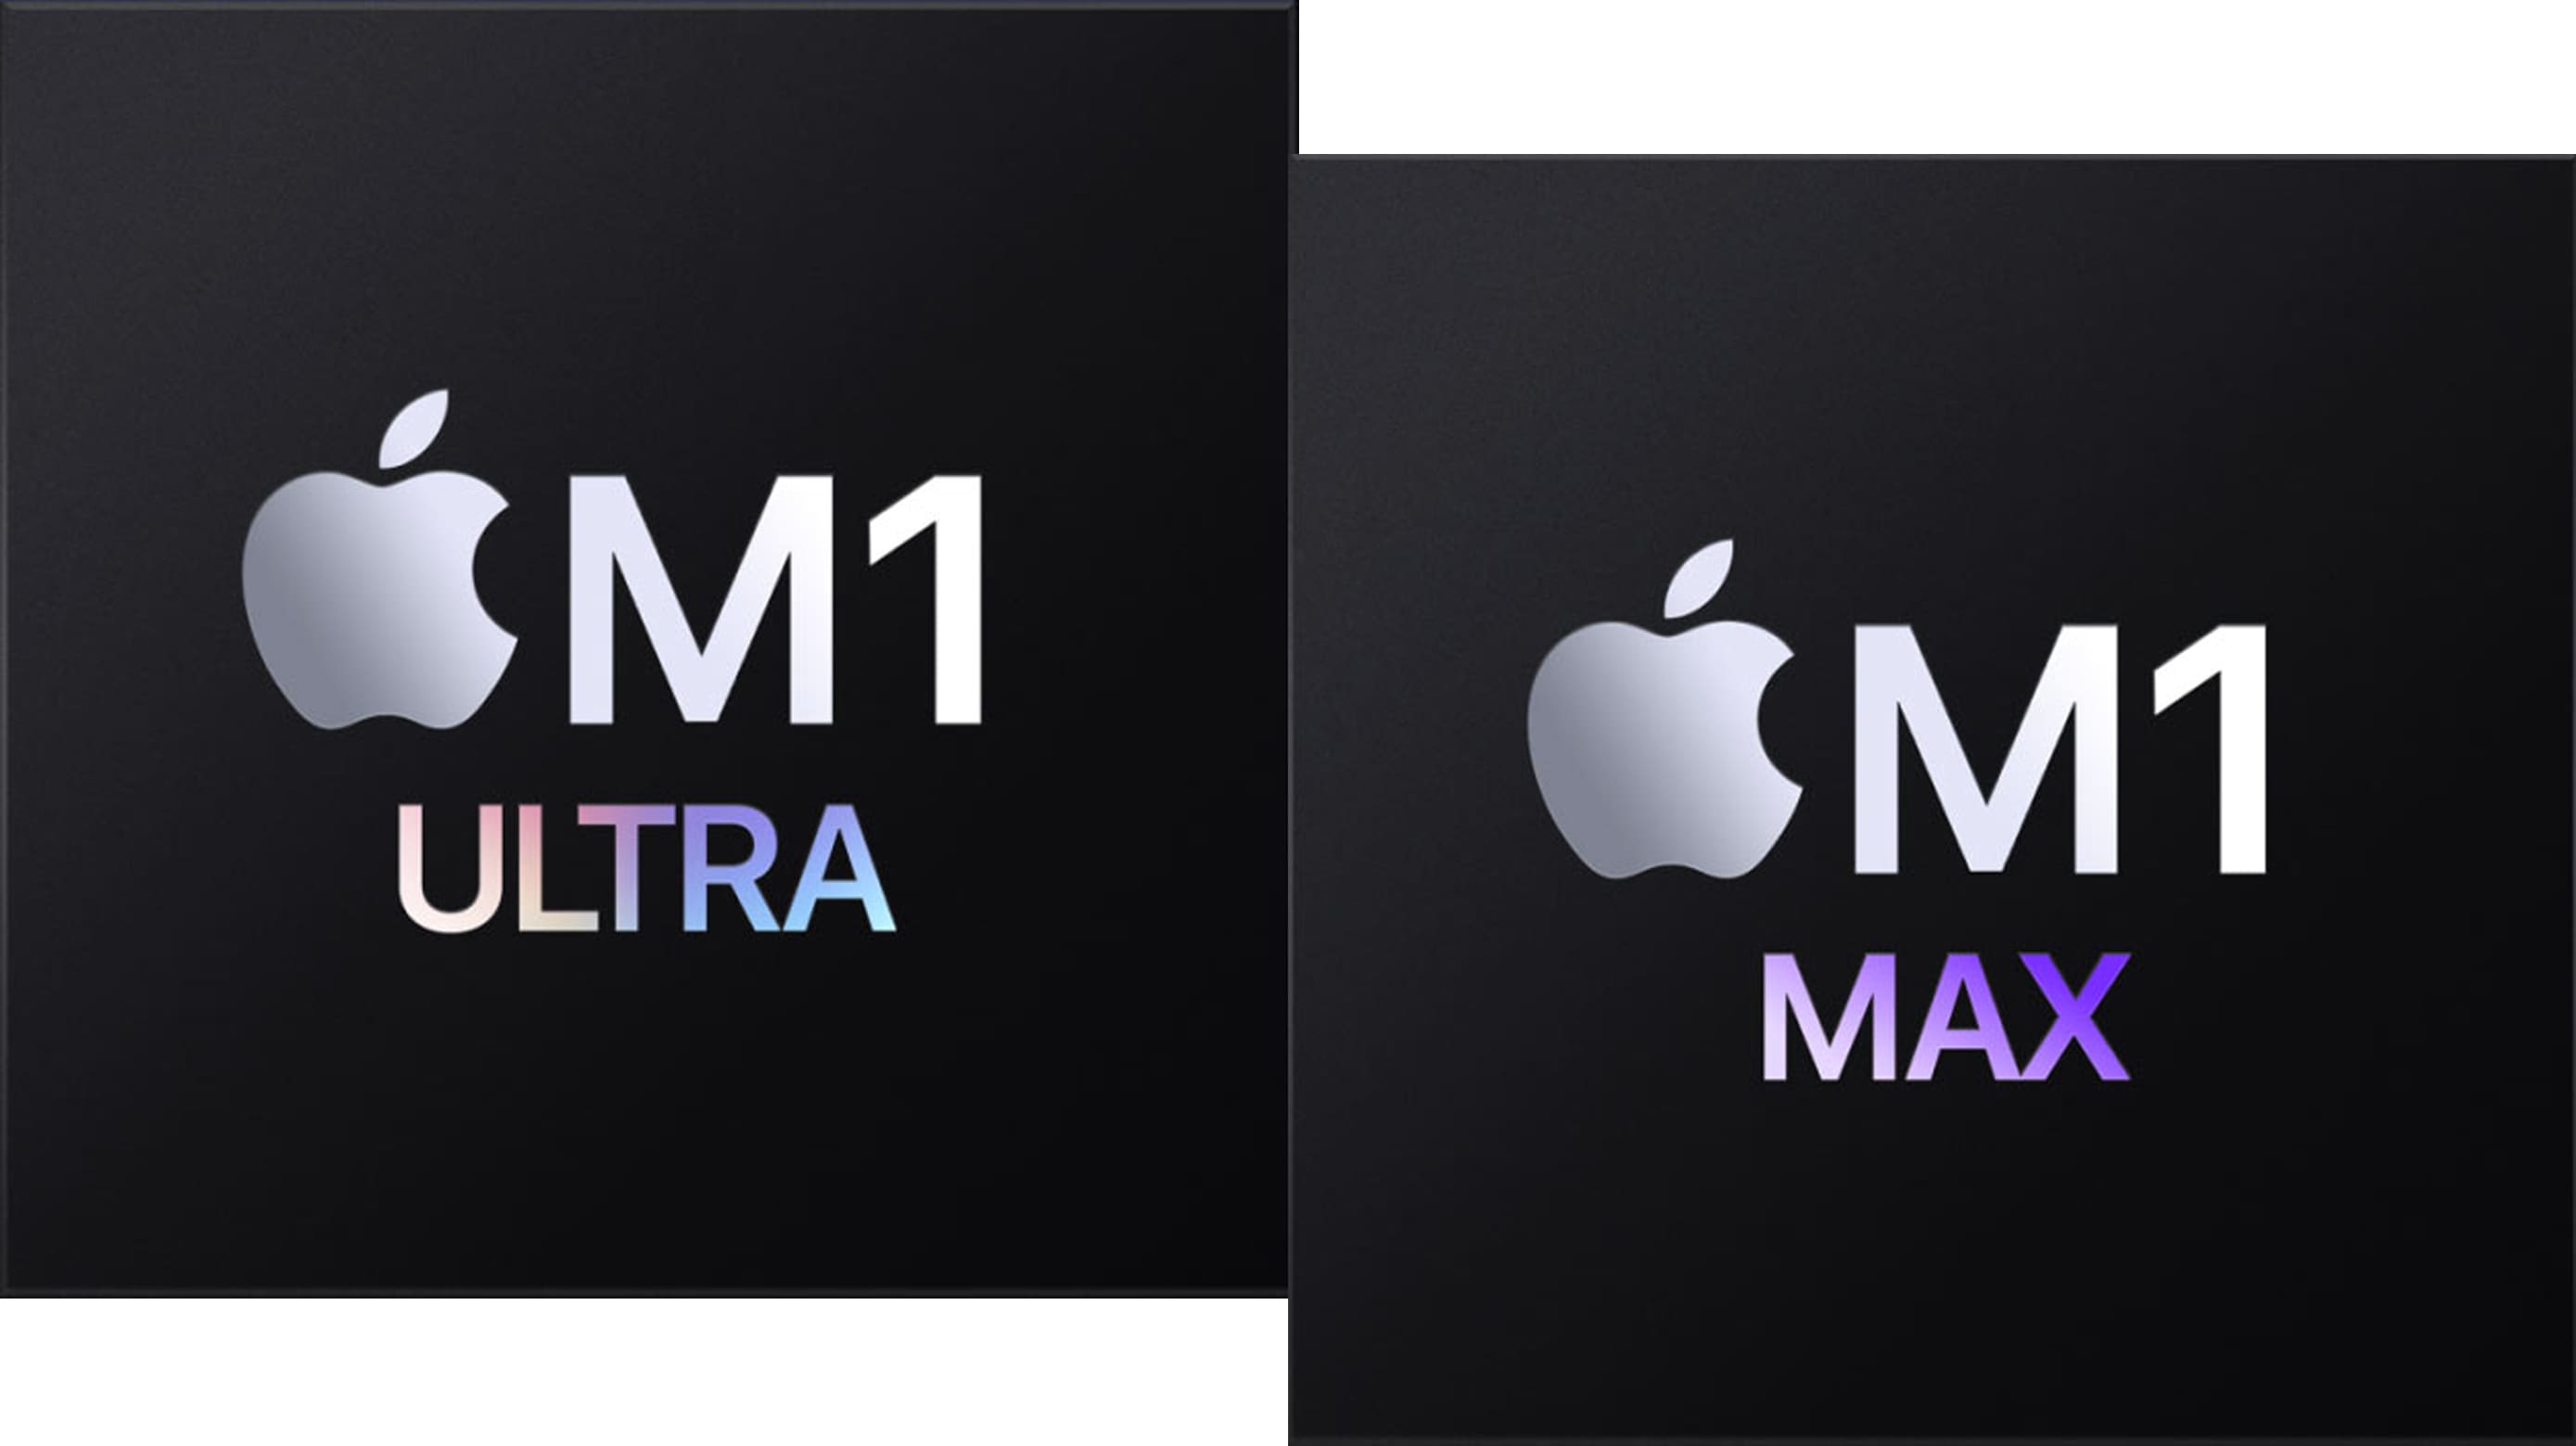 m1-ultra-m1-max